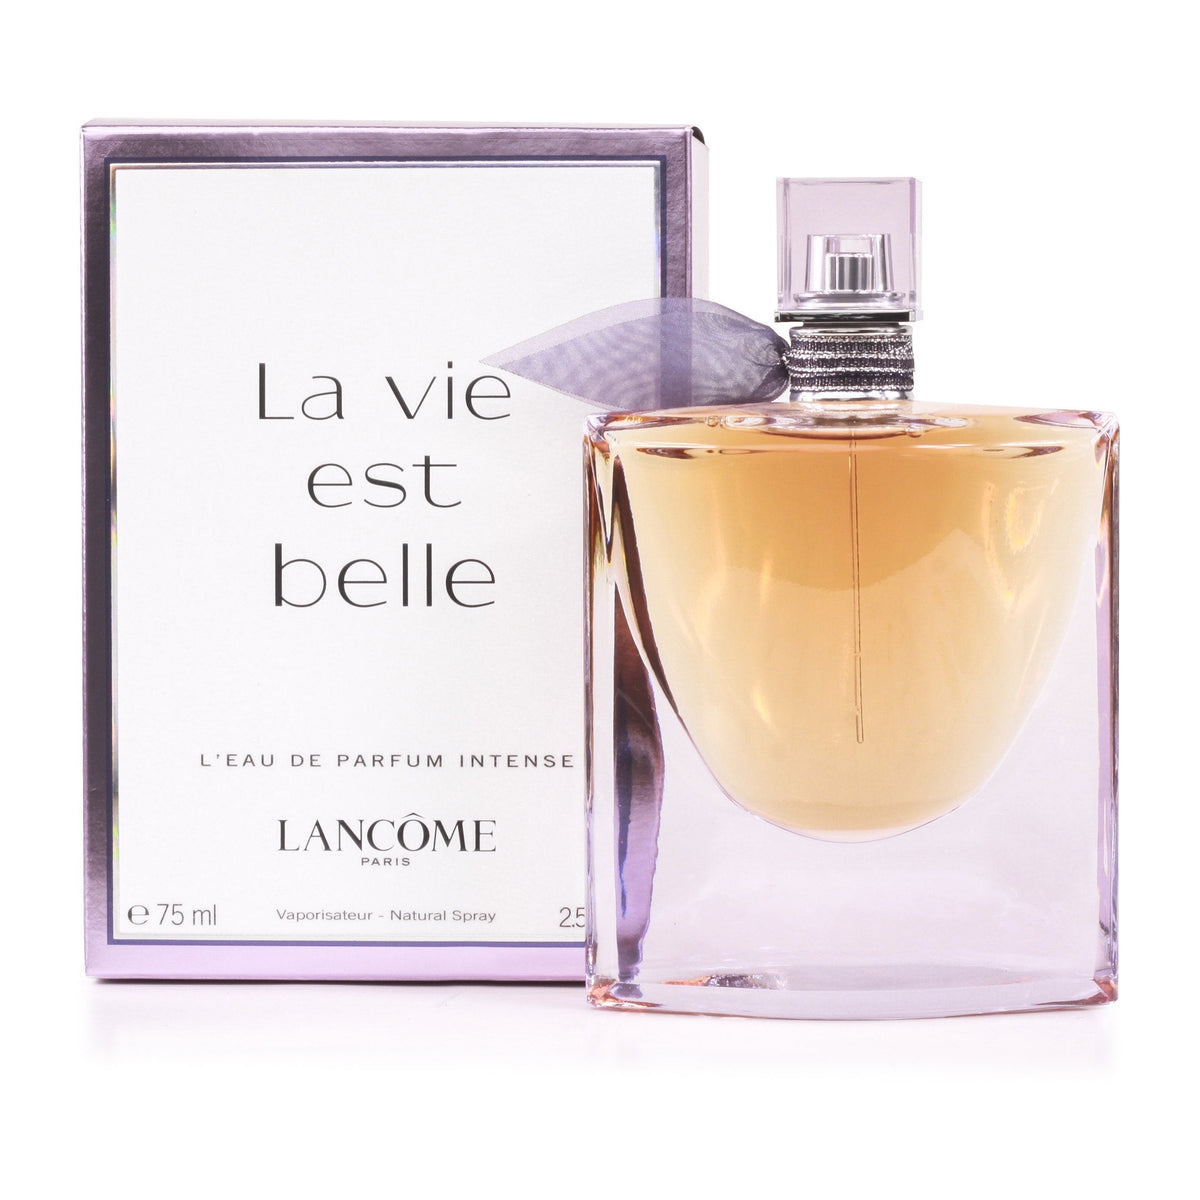 La Vie Est Belle Intense Eau de Parfum Spray for Women by Lancome 2.5 oz.